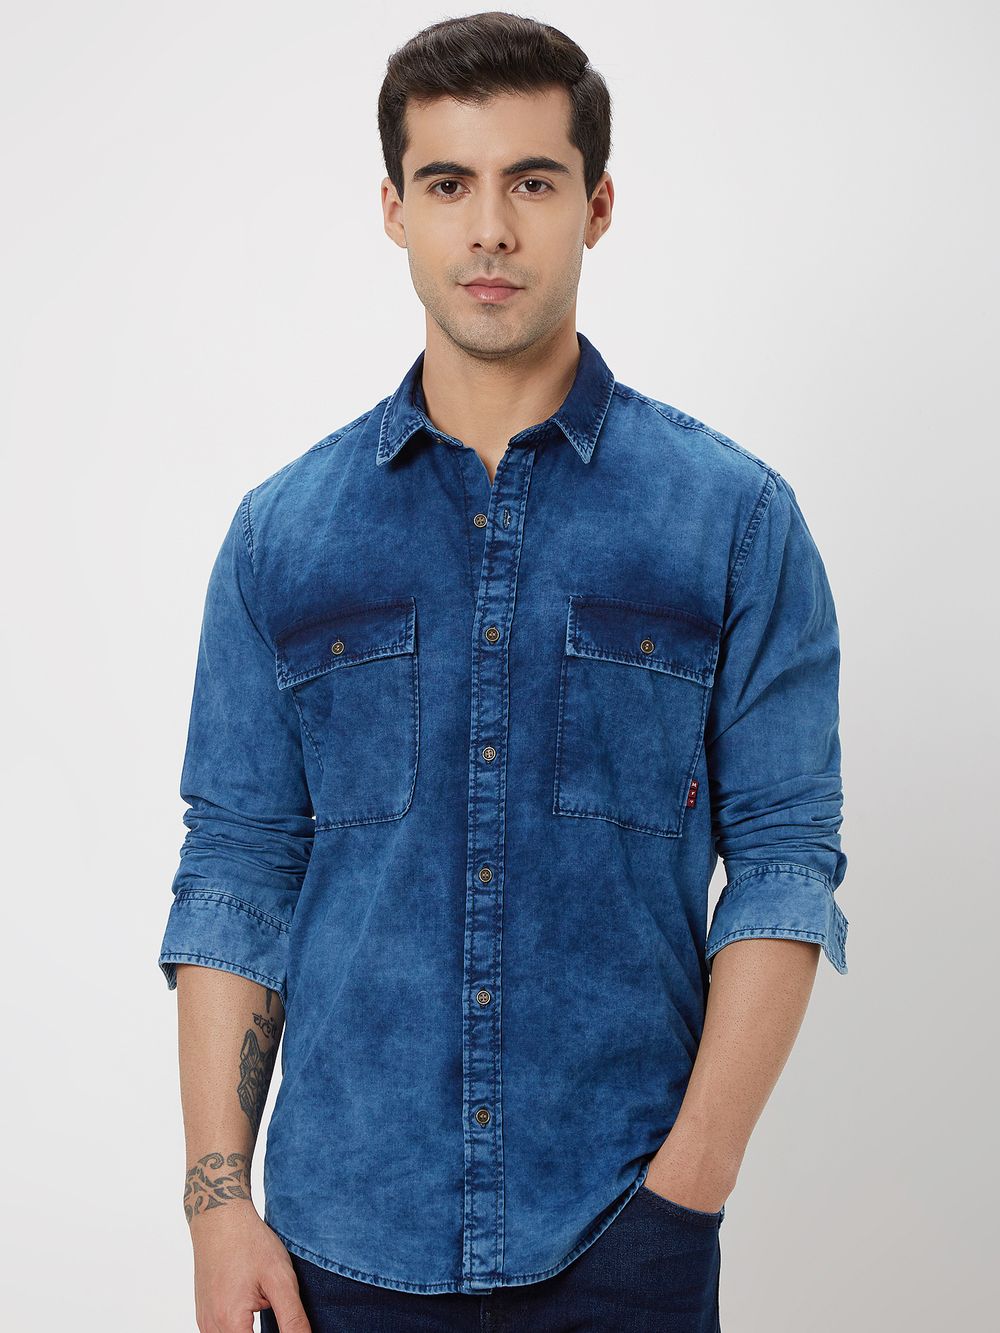 Indigo Blue Denim Plain Shirt